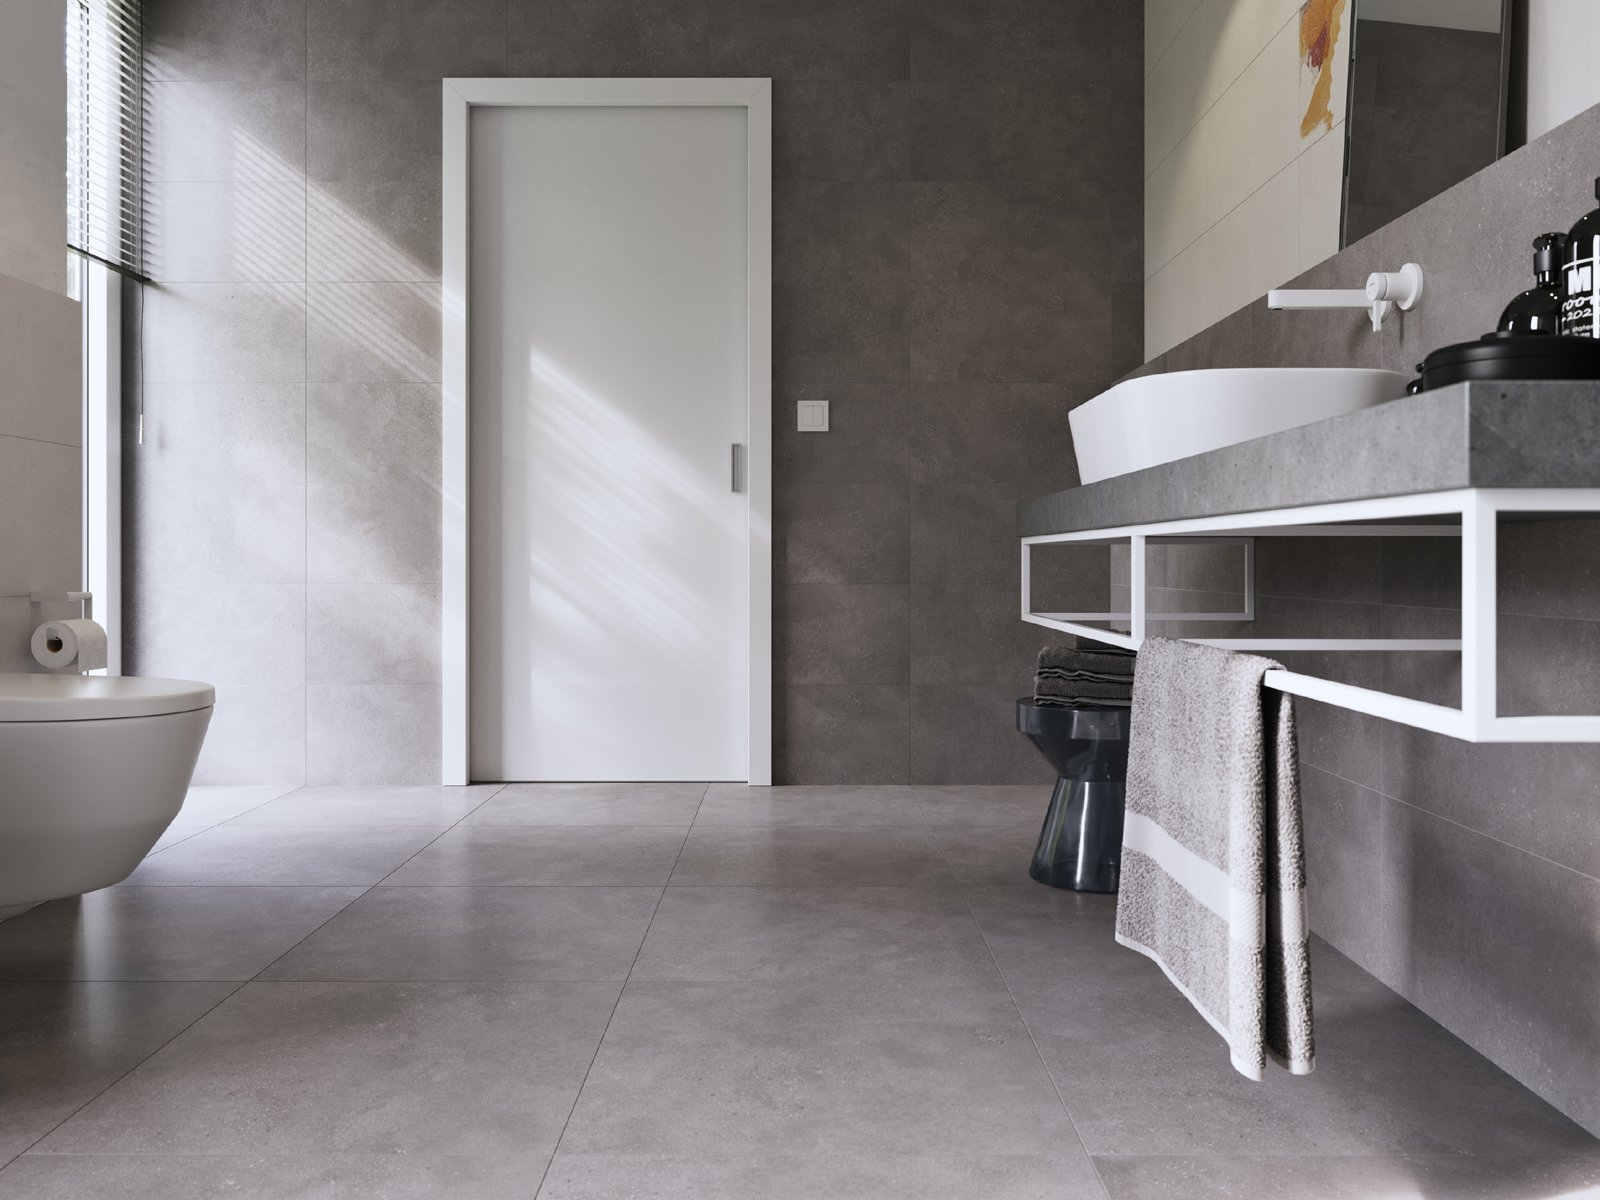 #Koupelna #beton #šedá #350 - 500 Kč/m2 #500 - 700 Kč/m2 #700 - 1000 Kč/m2 #RAKO #Betonico#Moderní styl#Extra velký formát#Velký formát